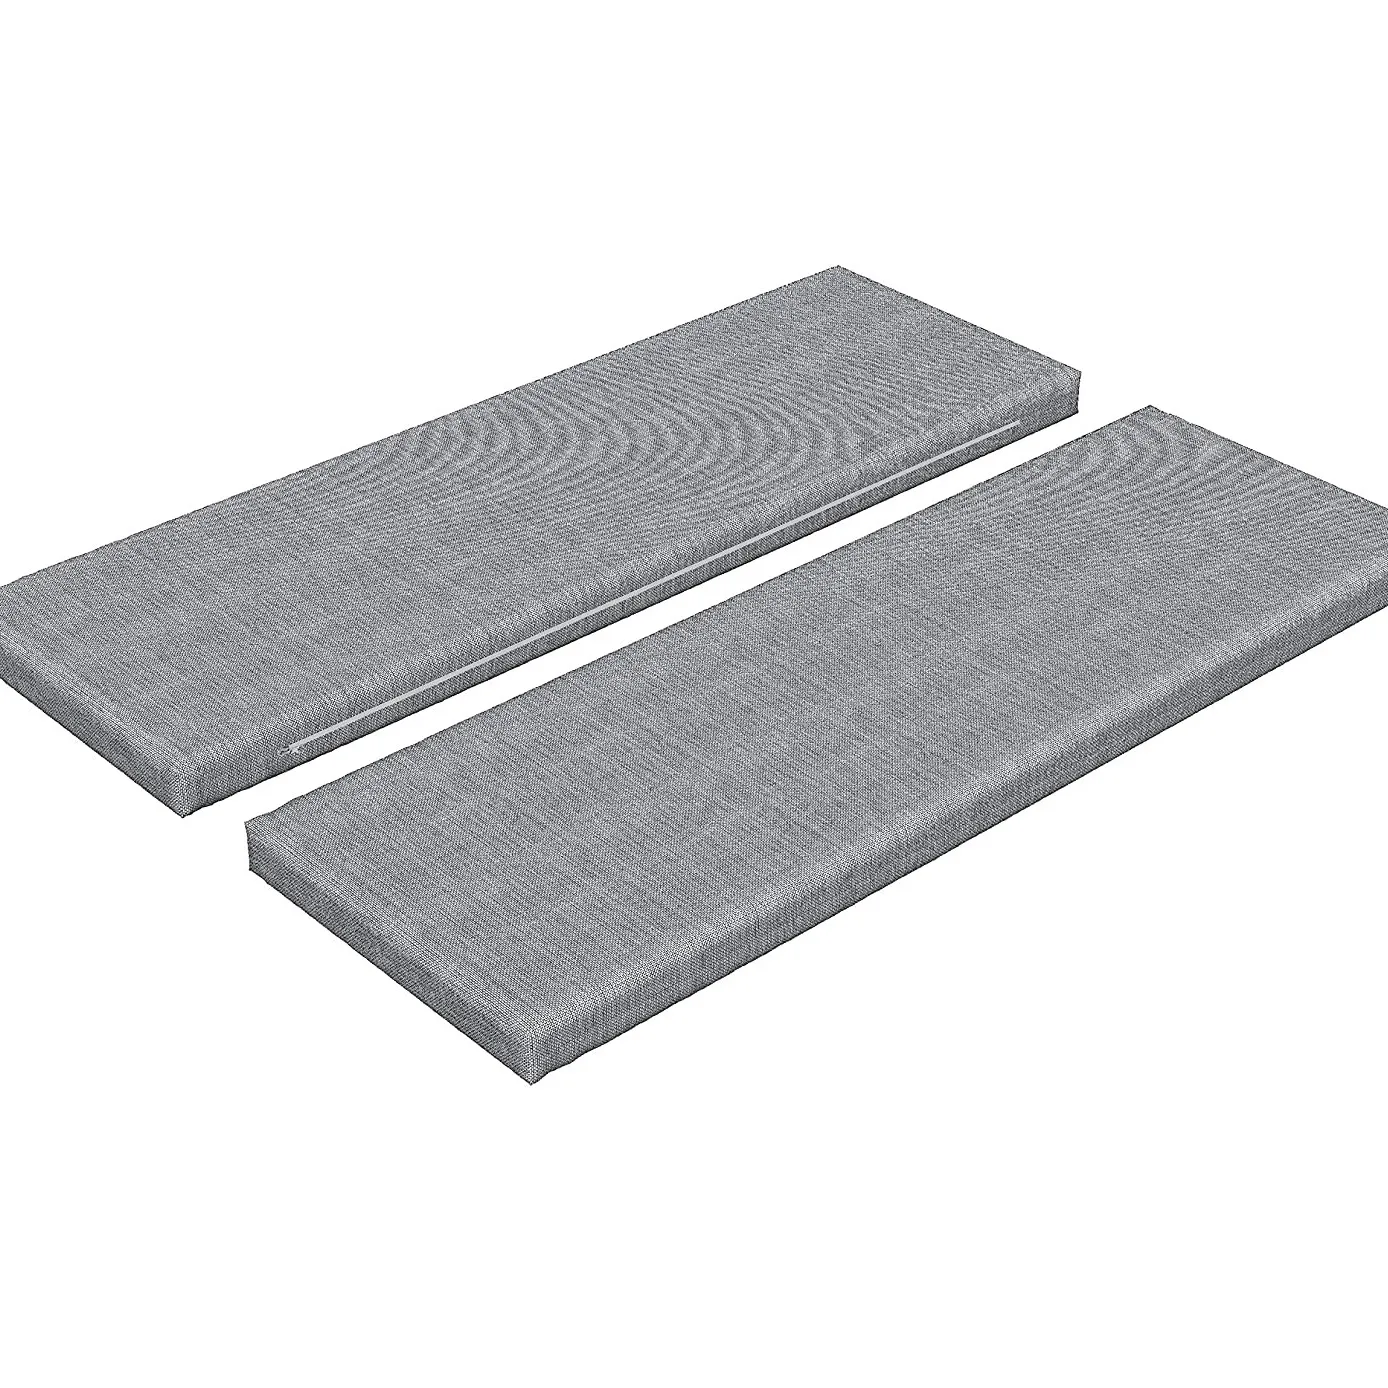 Linnen Bench Kussen Thuis Textiel Standaard Size Foam Pad Met Decoratieve Stof Cover Voor Thuis Slaapkamer & Outdoors